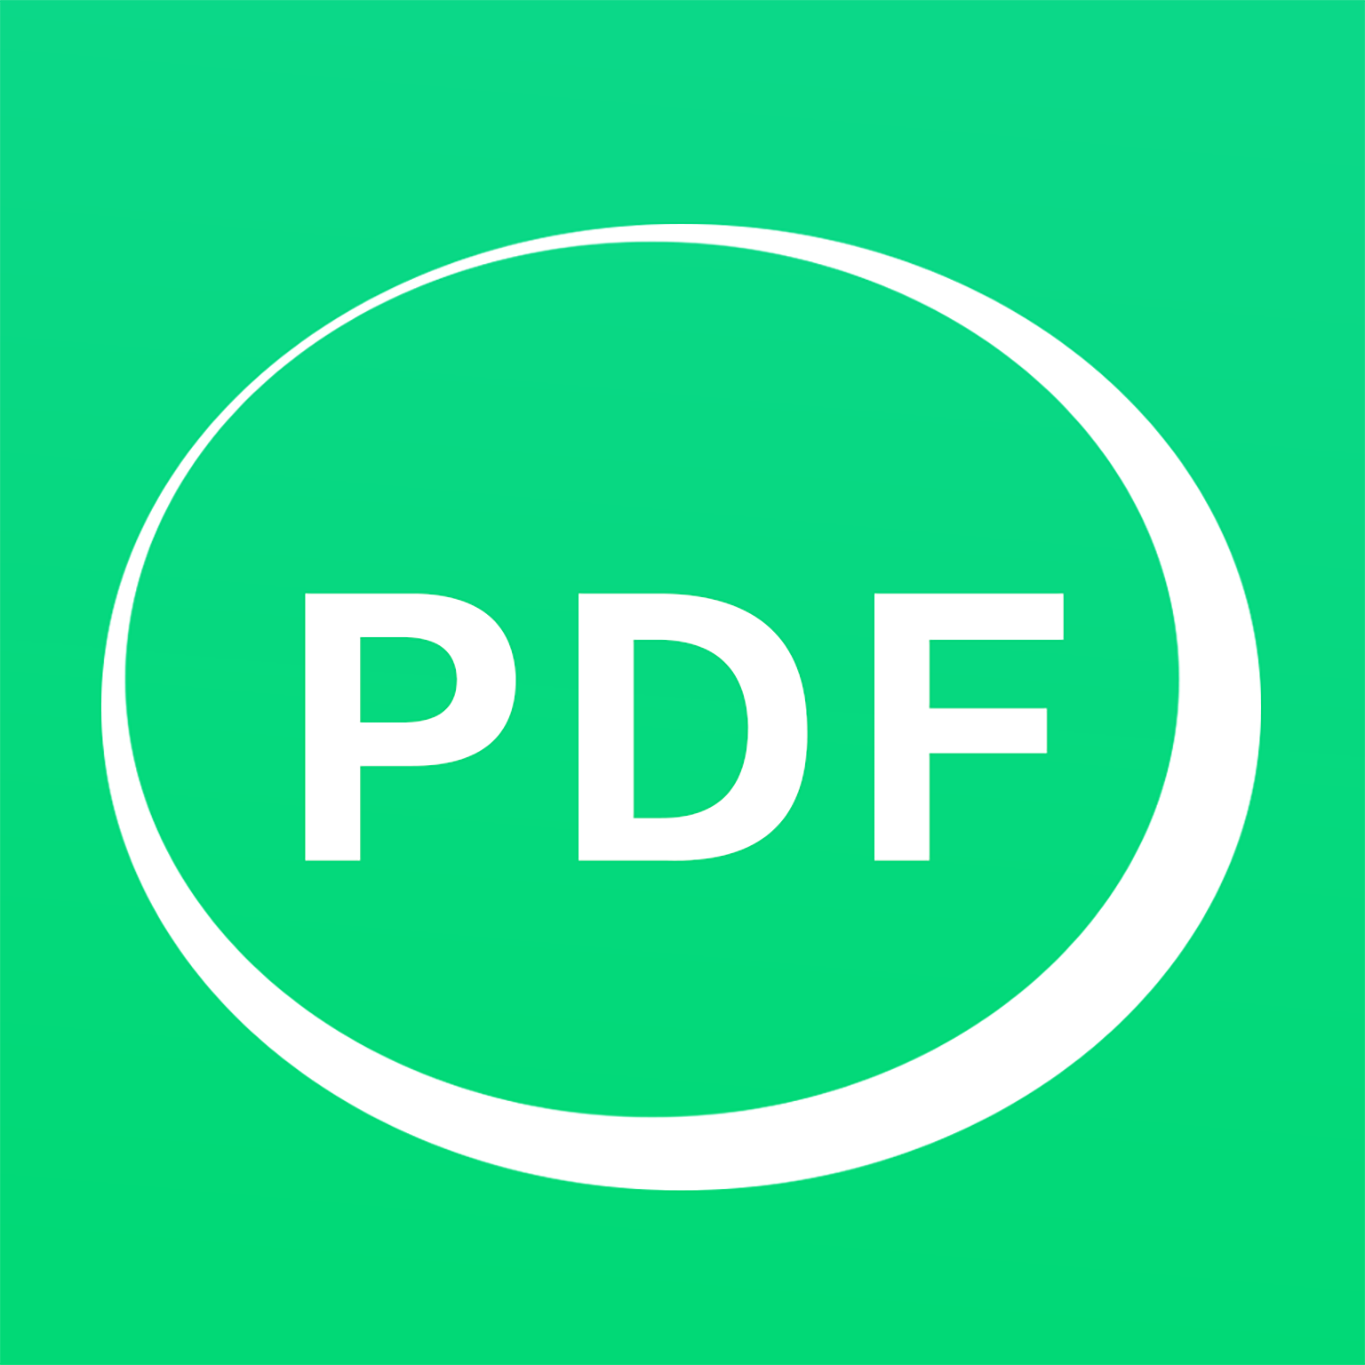 PDF转换器手机版